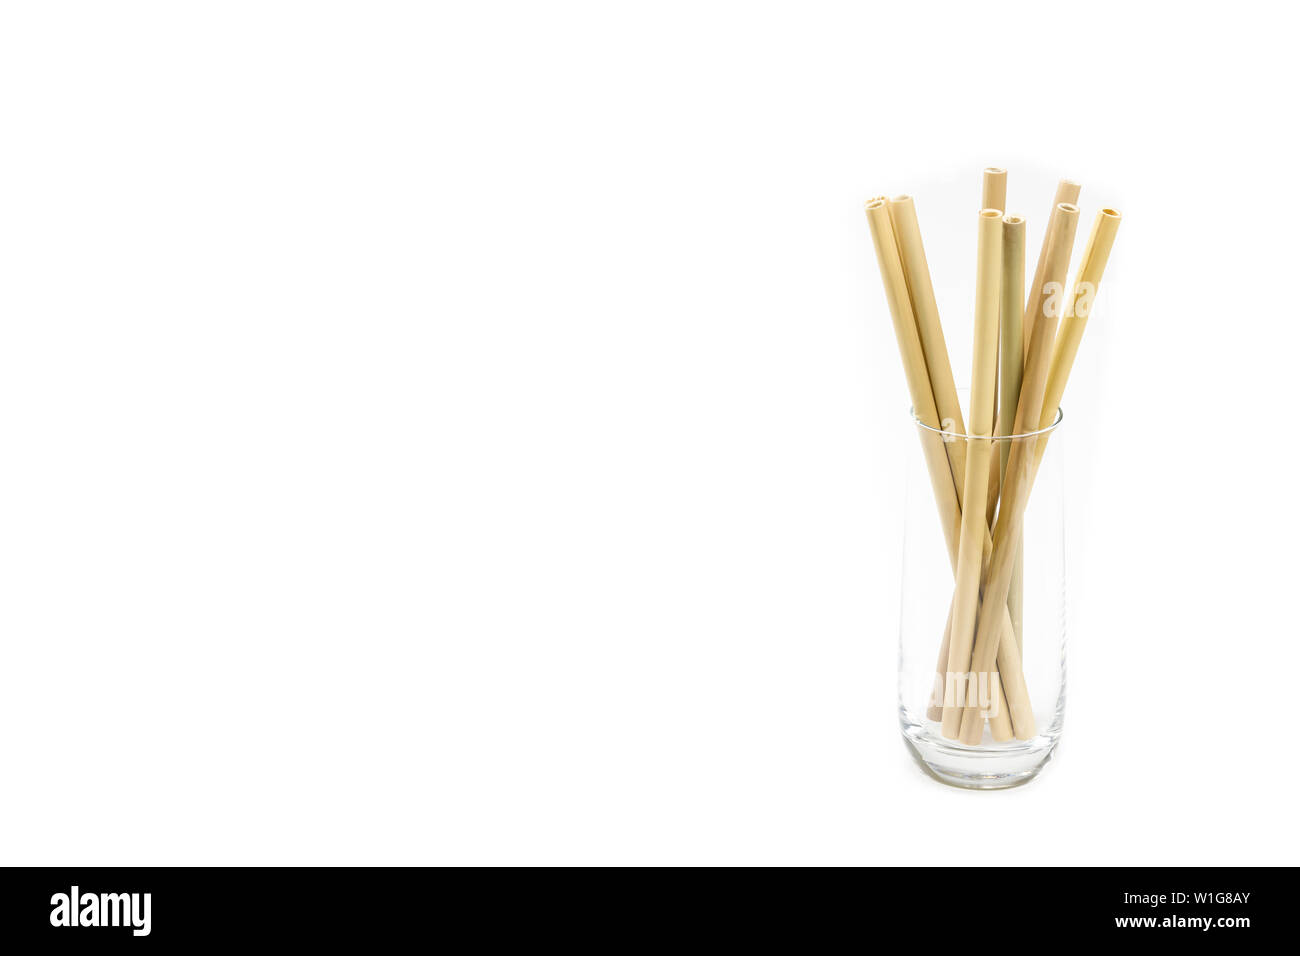 Wiederverwendbare Bambusstrohhalme in einem Glas, auf einem sauberen weißen Hintergrund. Viel Platz für individuelle Anpassungen! Stockfoto